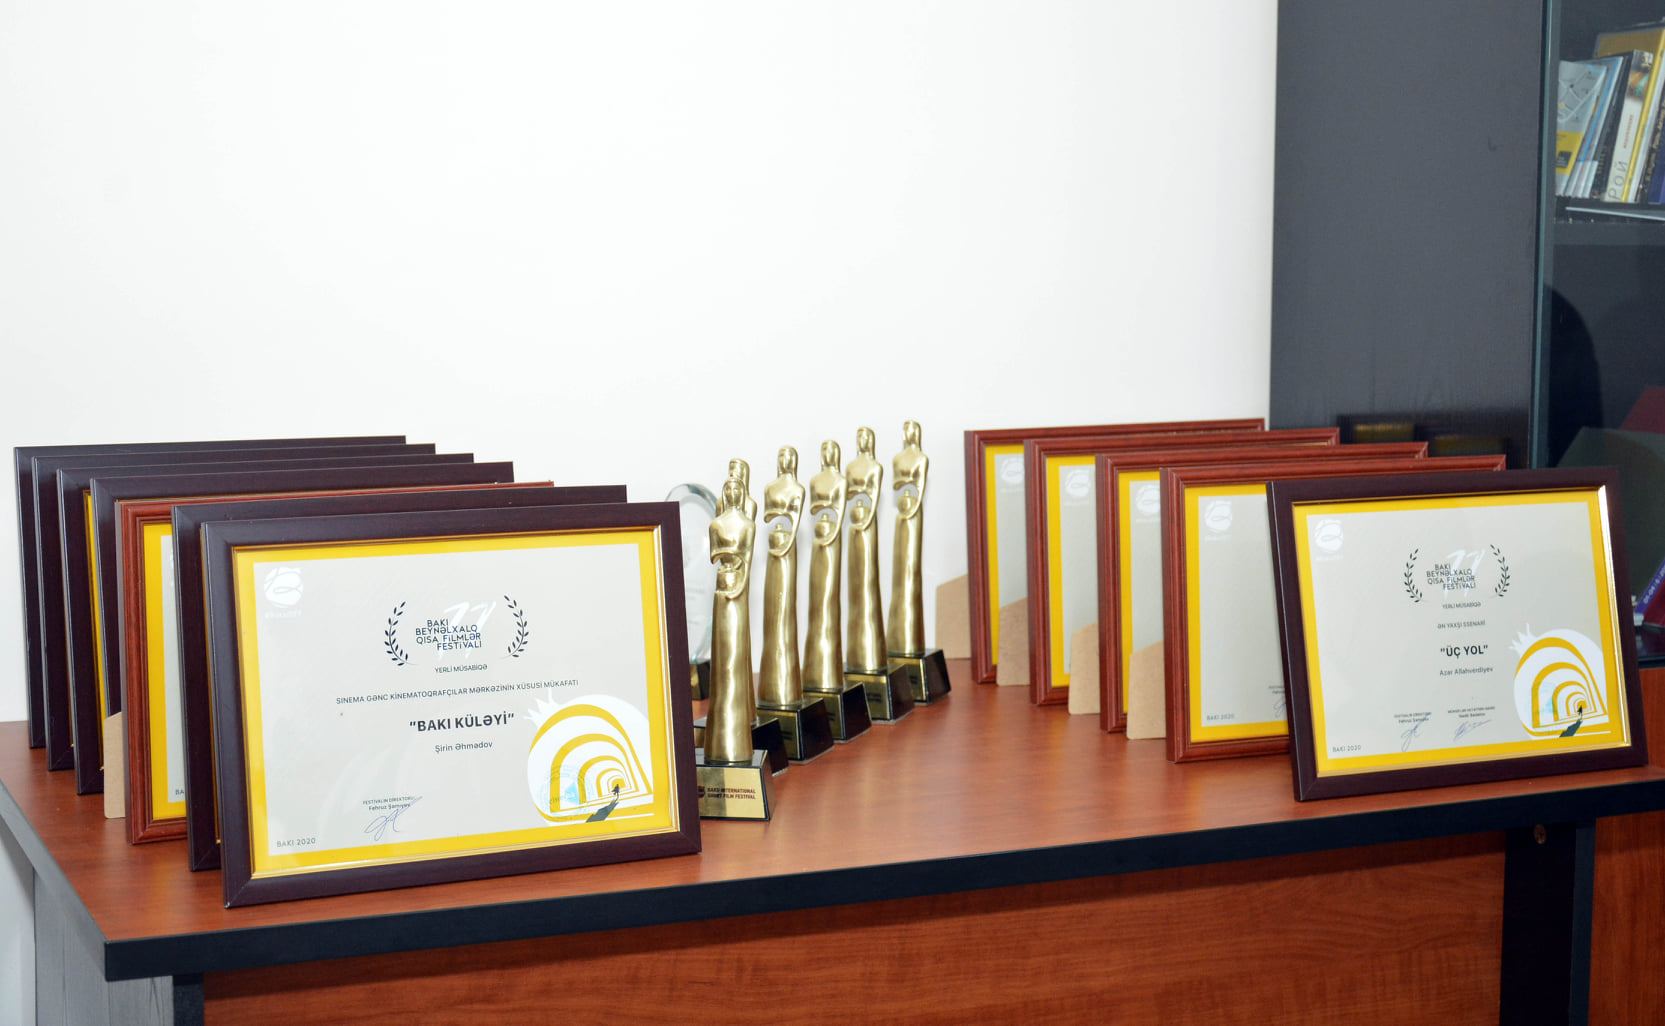 Состоялось награждение победителей Бакинского международного кинофестиваля – список (ФОТО)